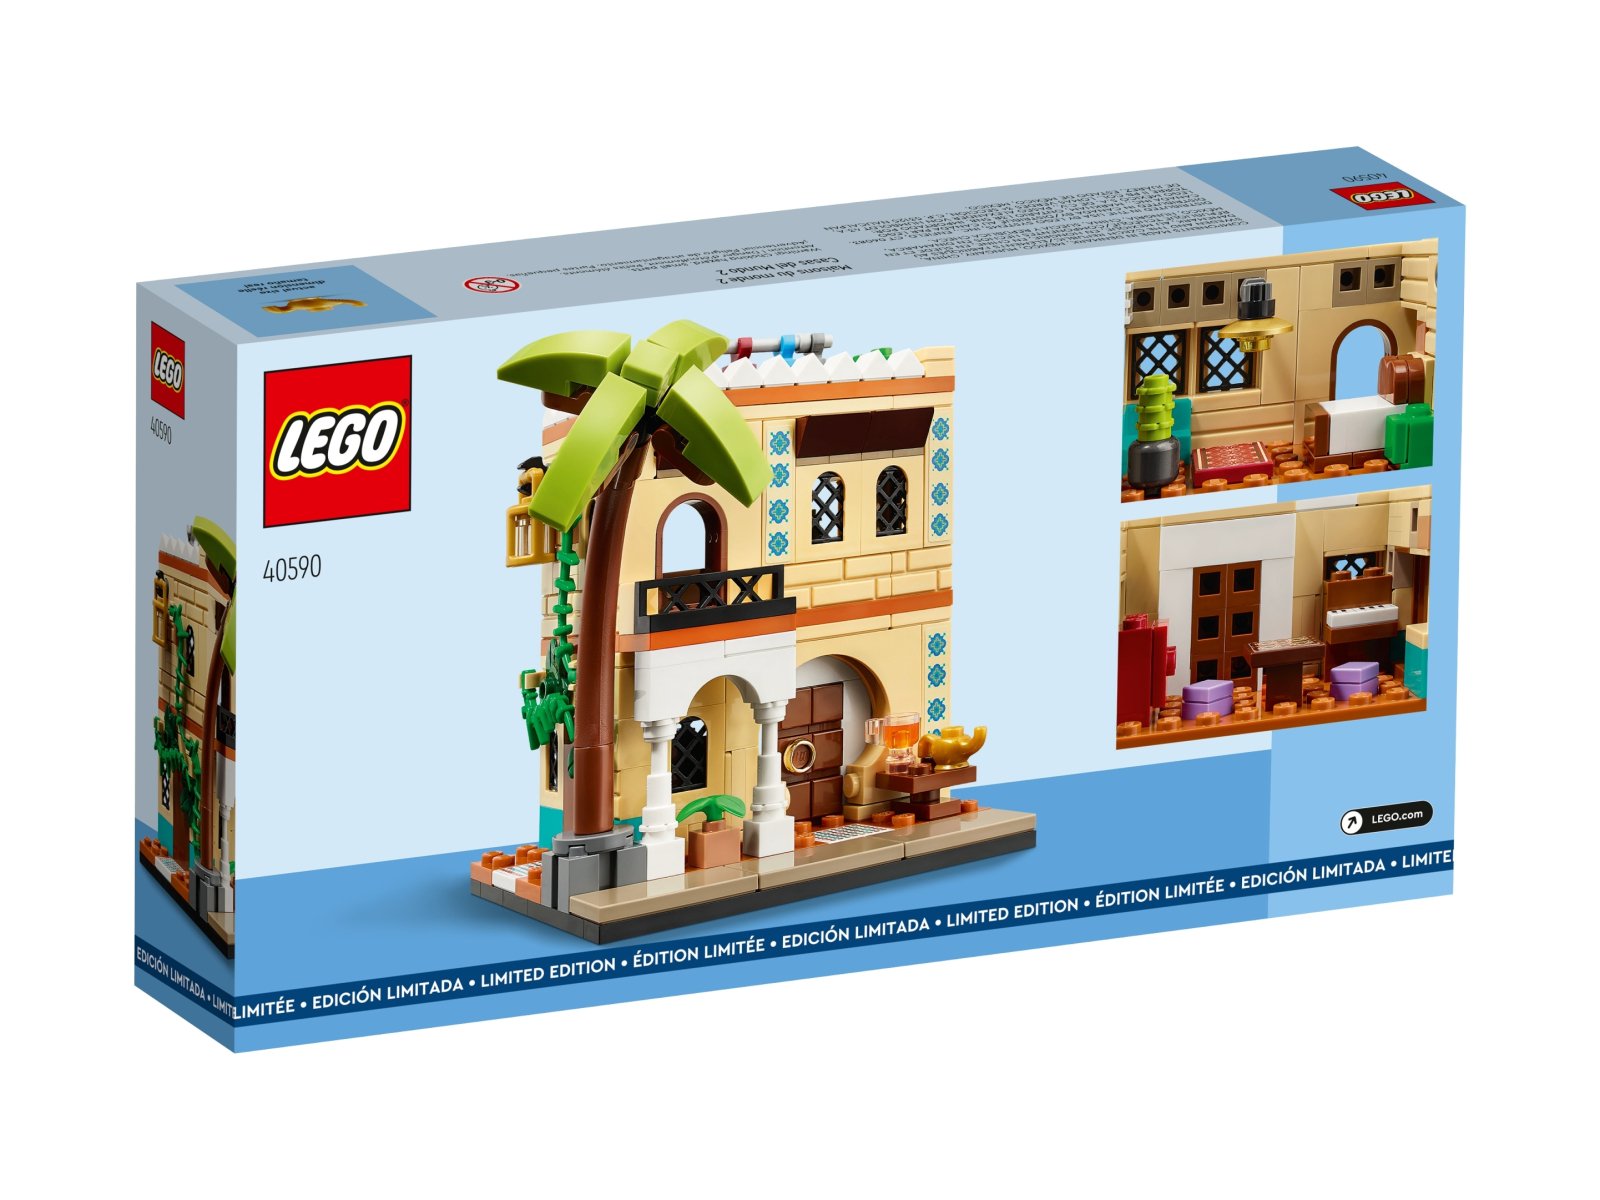 LEGO Domy świata 2 40590